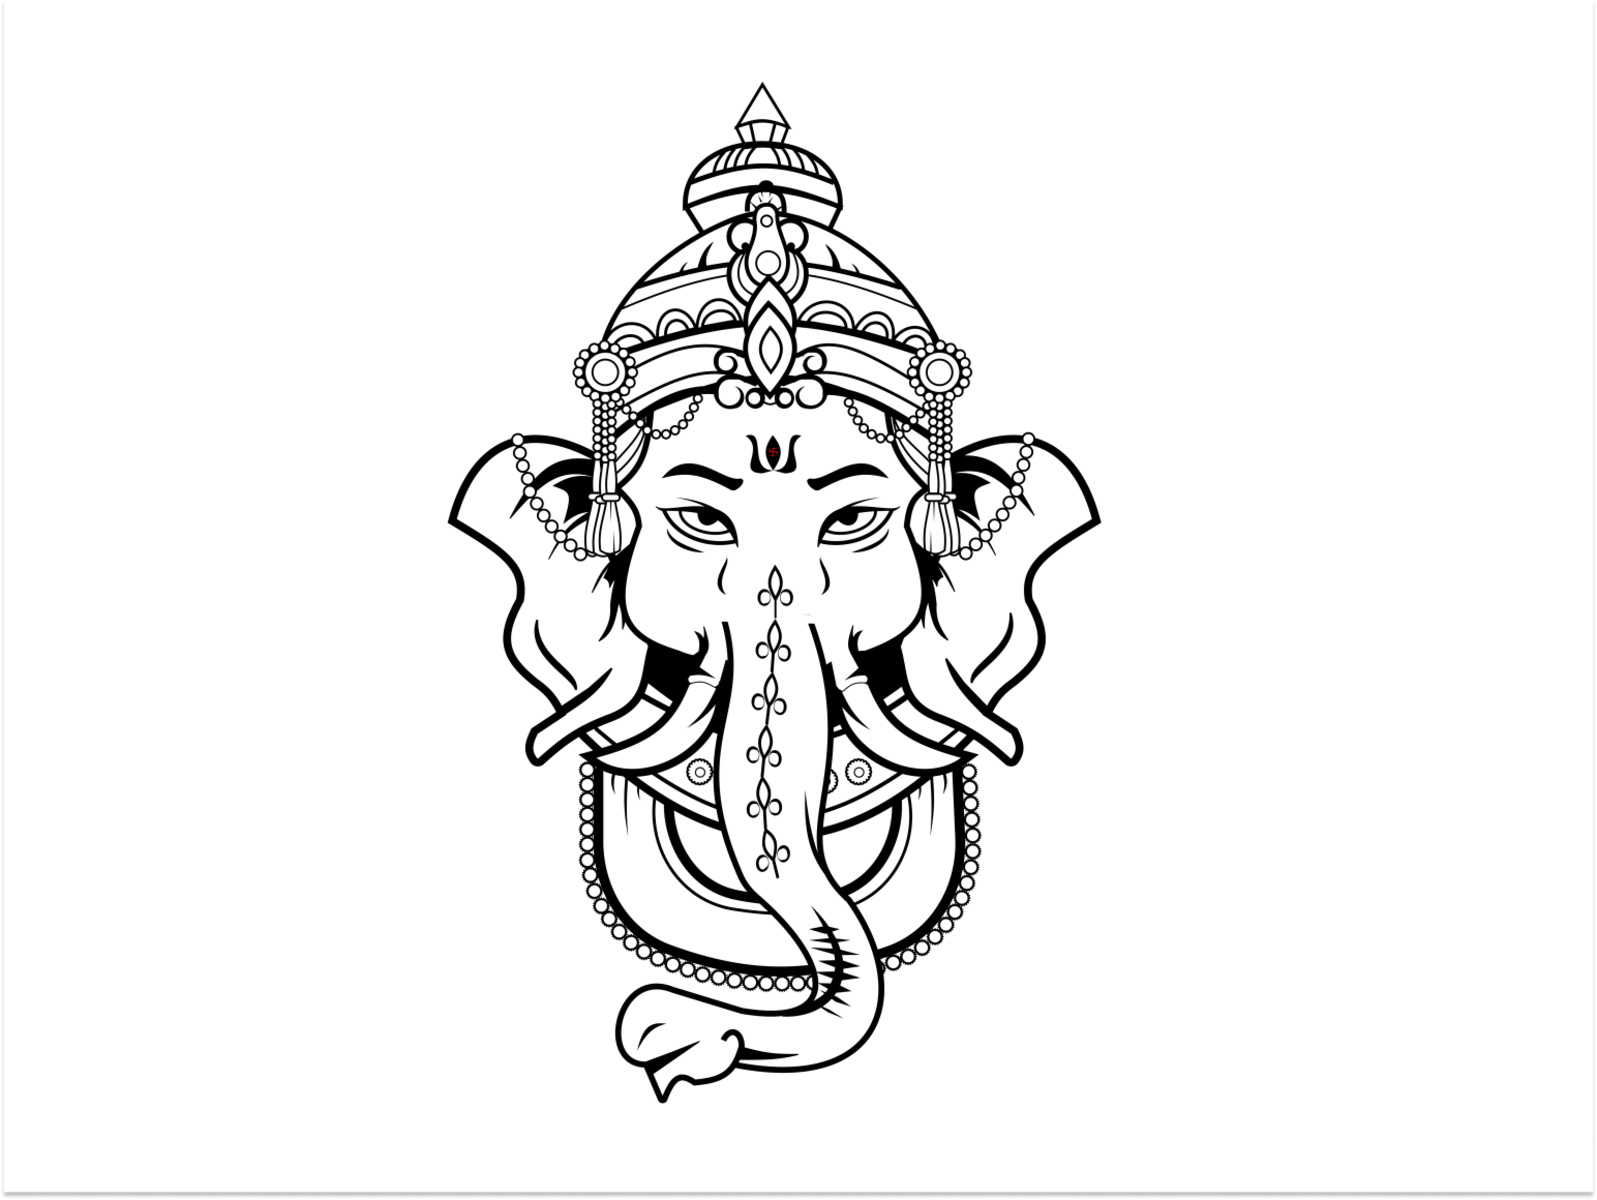 Lord Ganesha Vector Image | Book art drawings, Ganesha drawing, Ganesh art  paintings